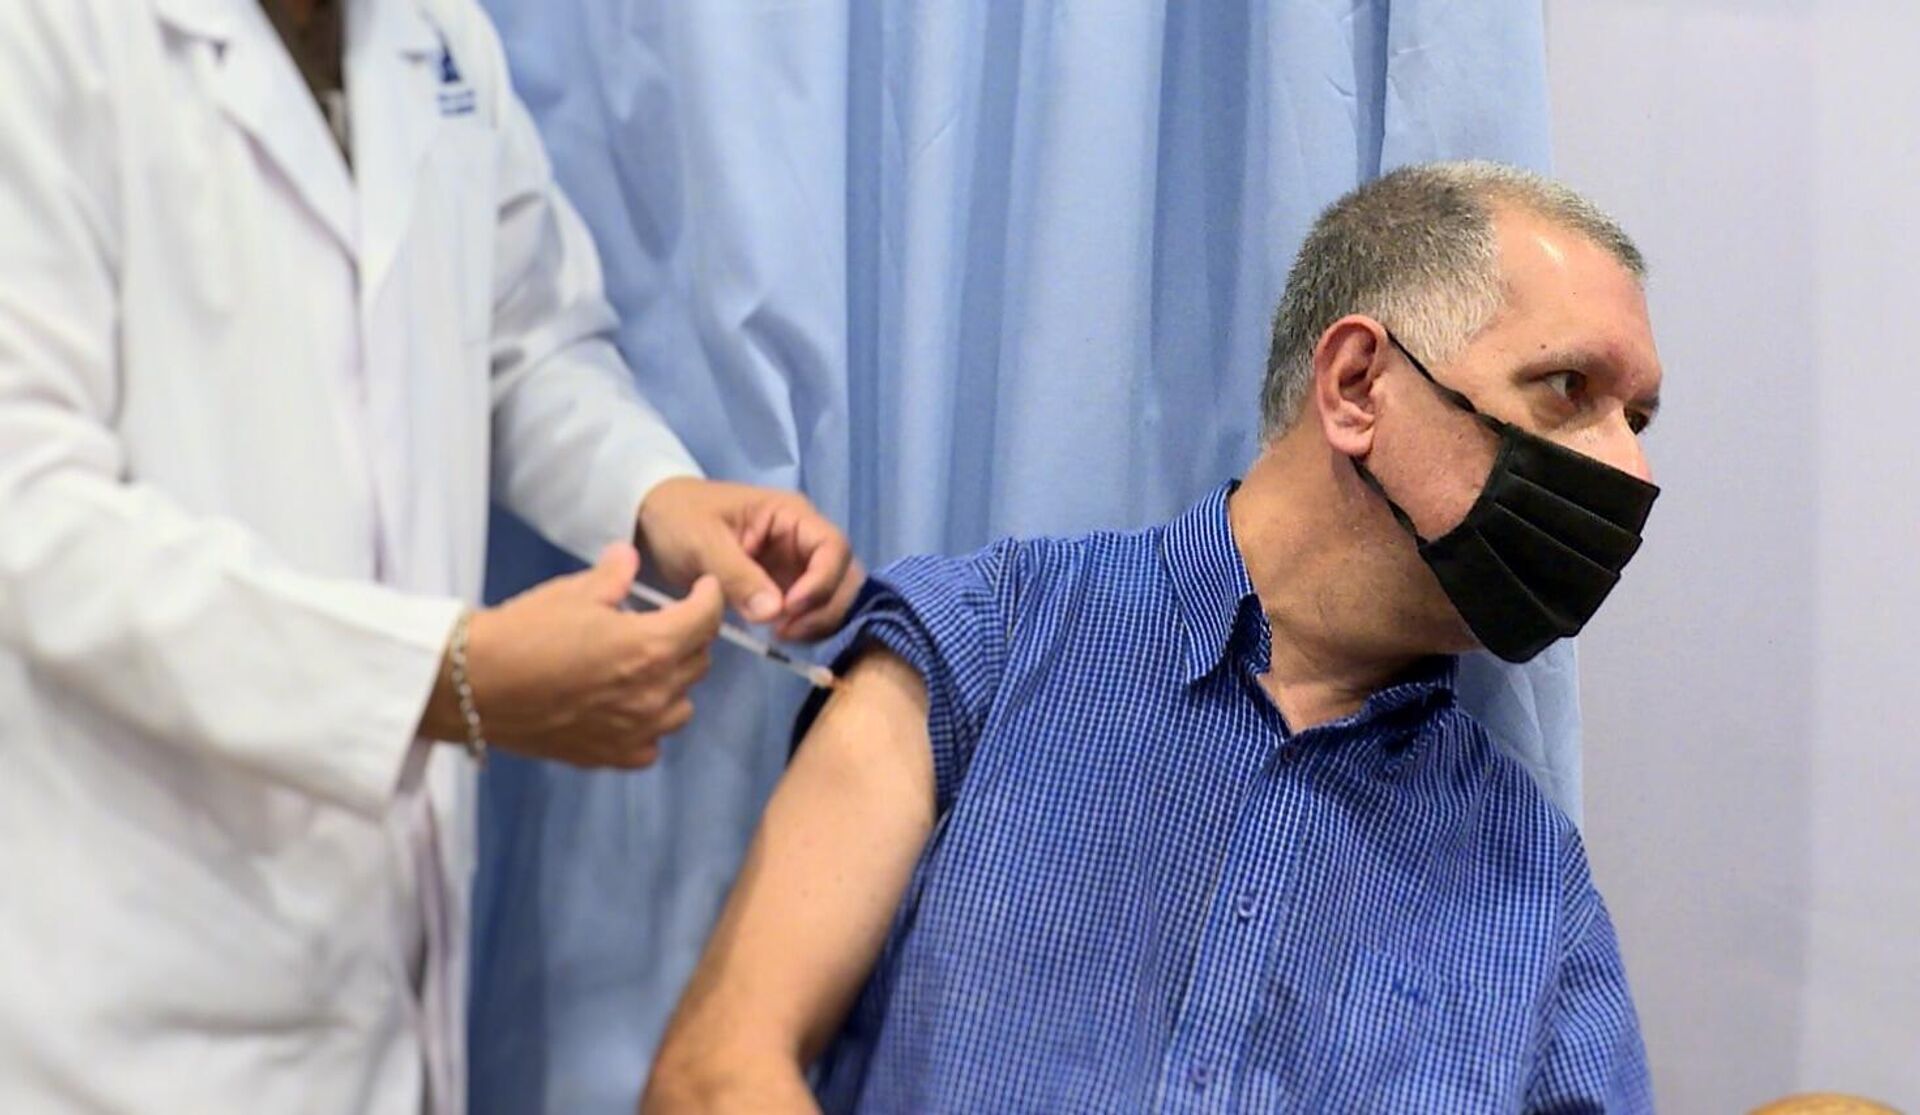 Humberto Tory, profesor universitario, recibe la primera dosis de una vacuna contra el COVID-19 en Caracas - Sputnik Mundo, 1920, 01.09.2021